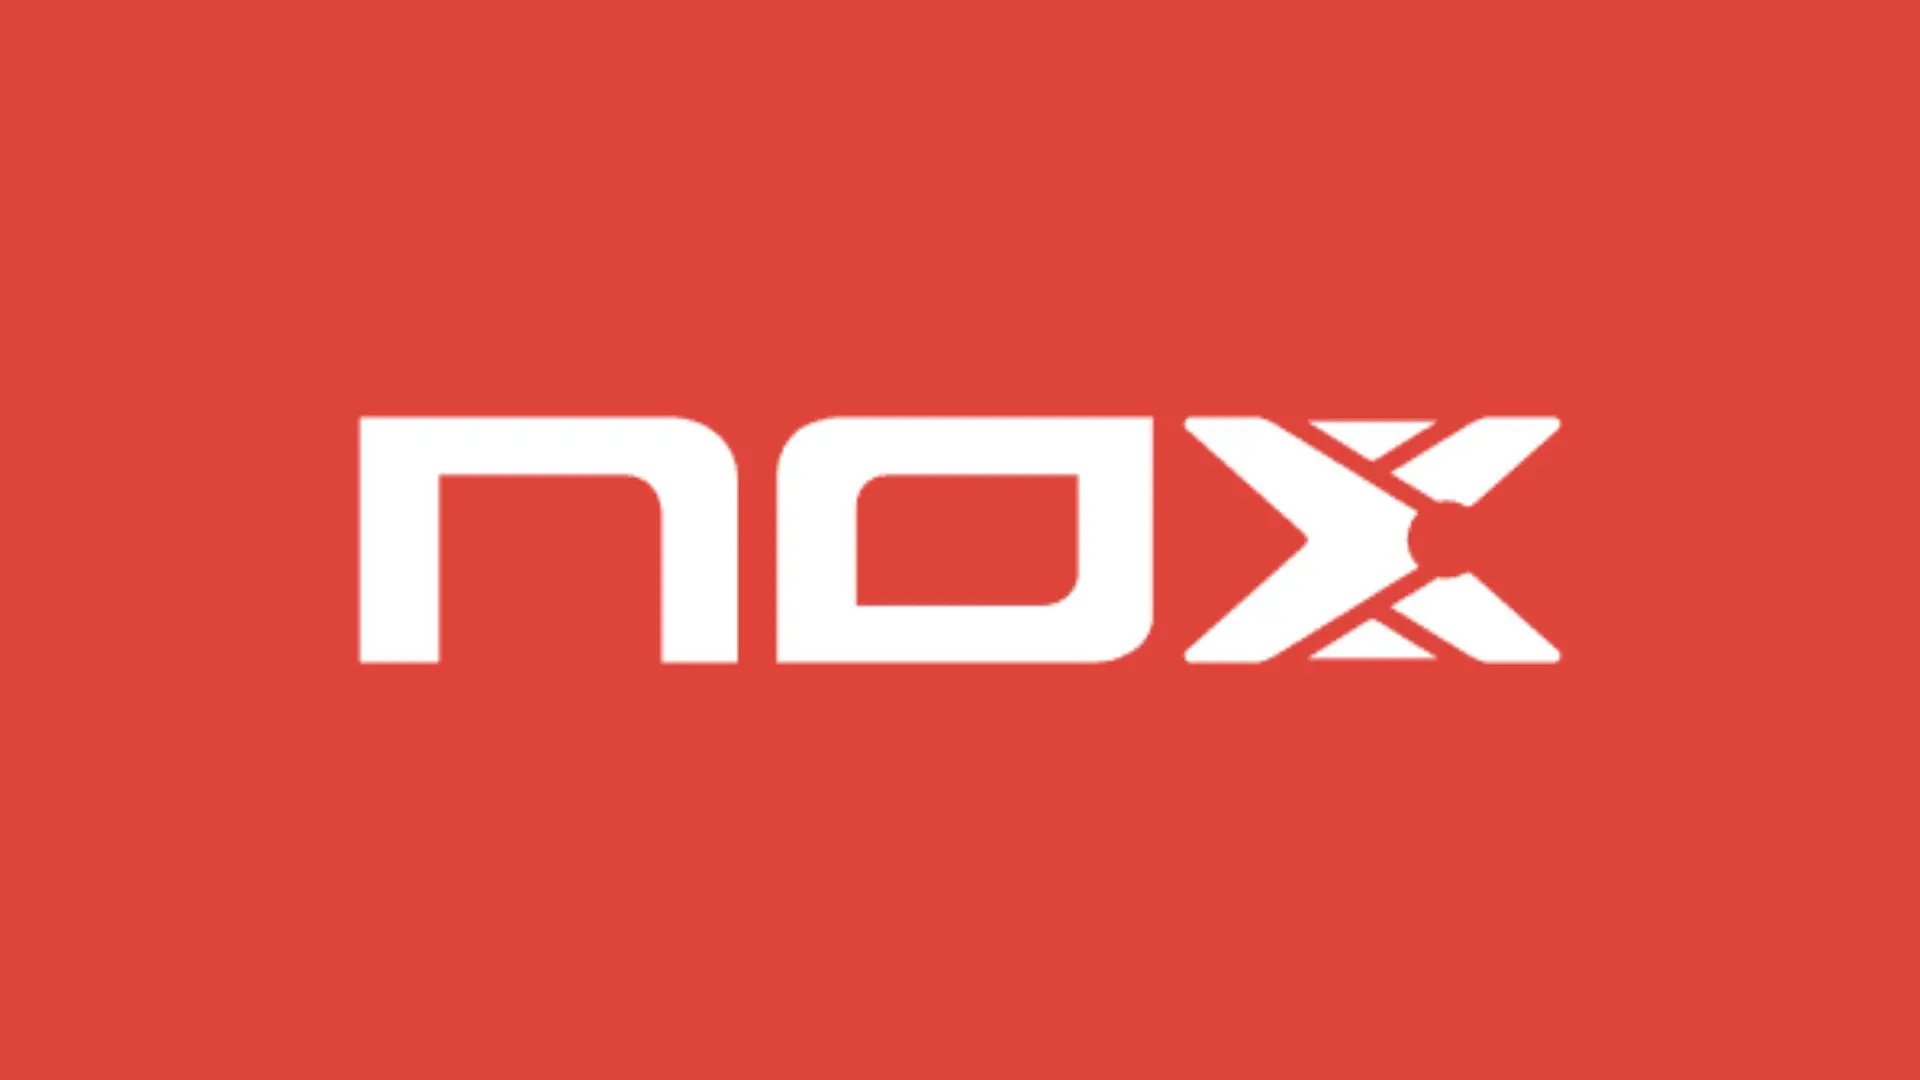 Nox padel : qual pala usar dependendo da temperatura?